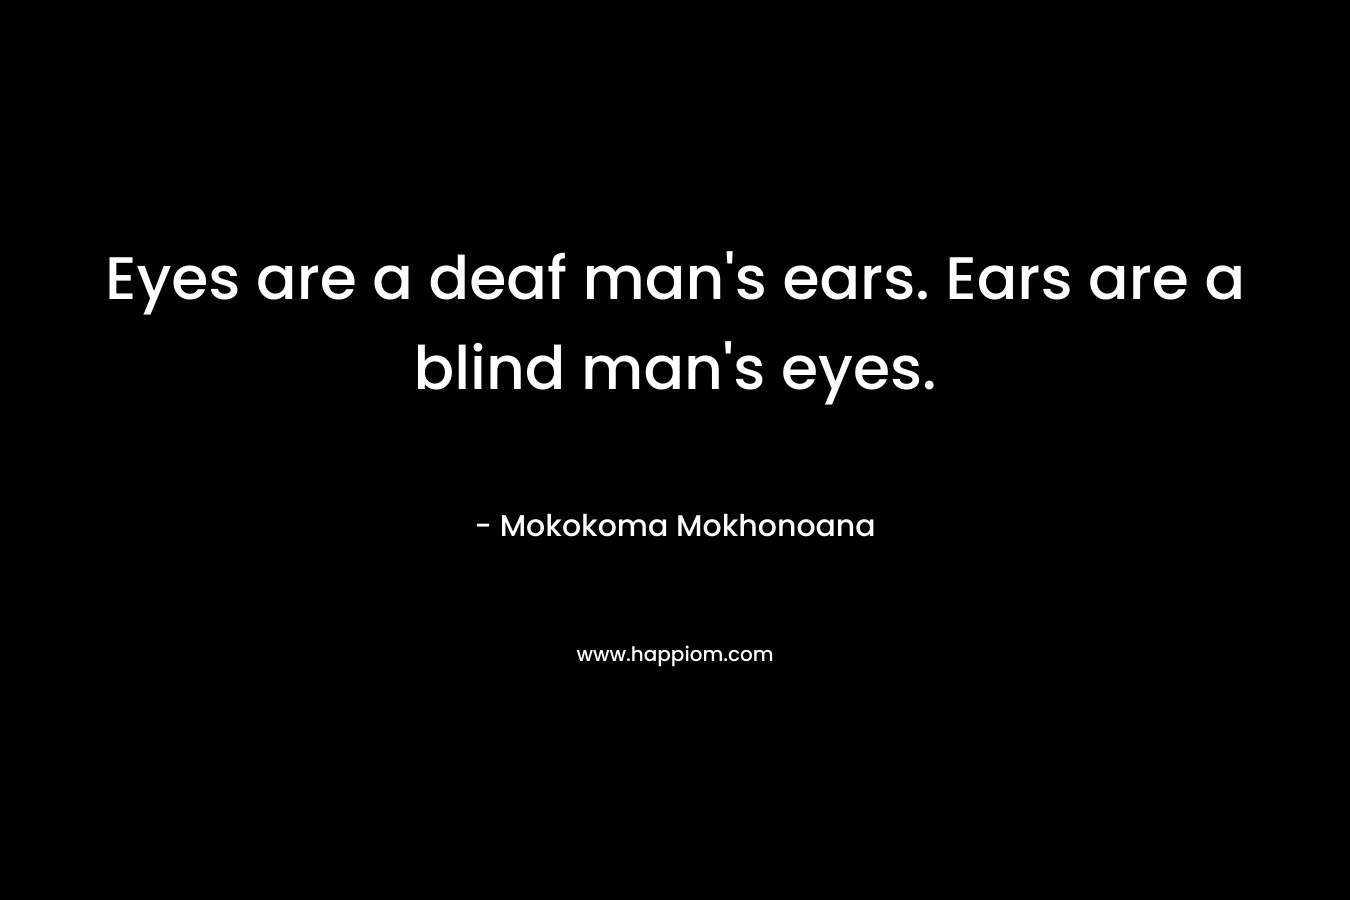 Eyes are a deaf man's ears. Ears are a blind man's eyes.